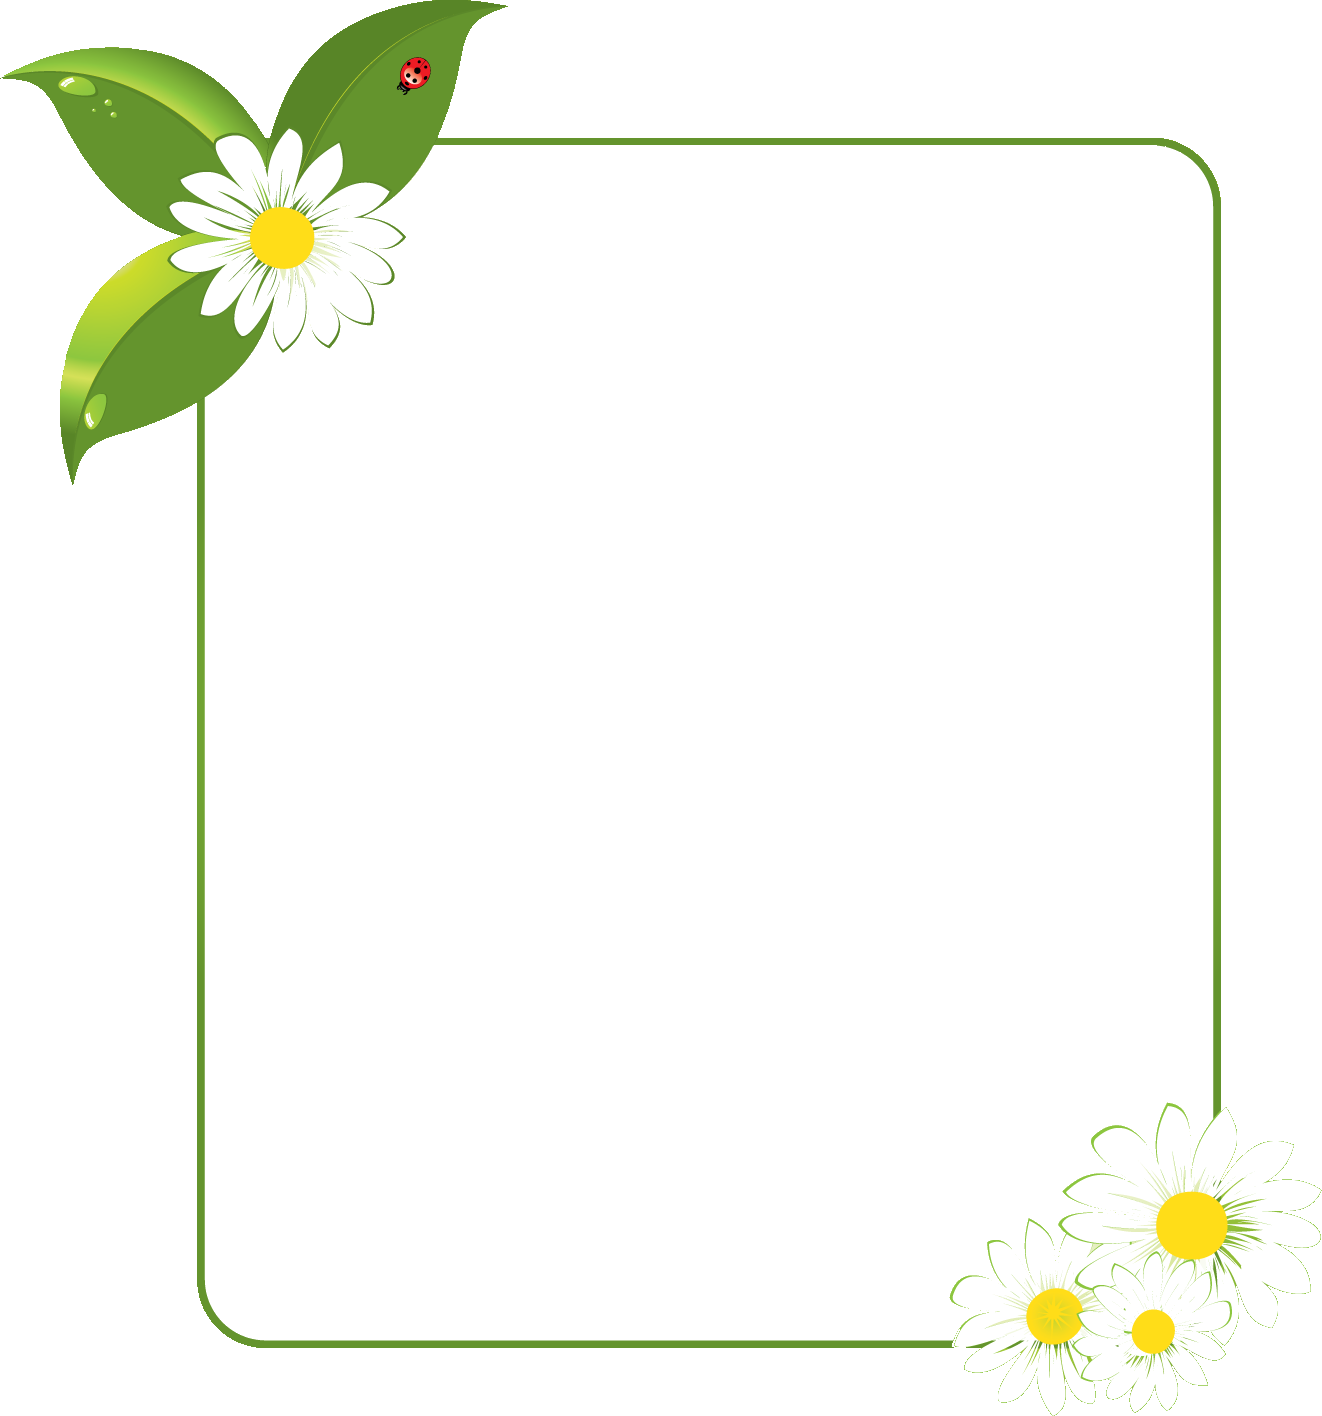 花のイラスト フリー素材 フレーム枠no 490 白黄 葉 てんとう虫